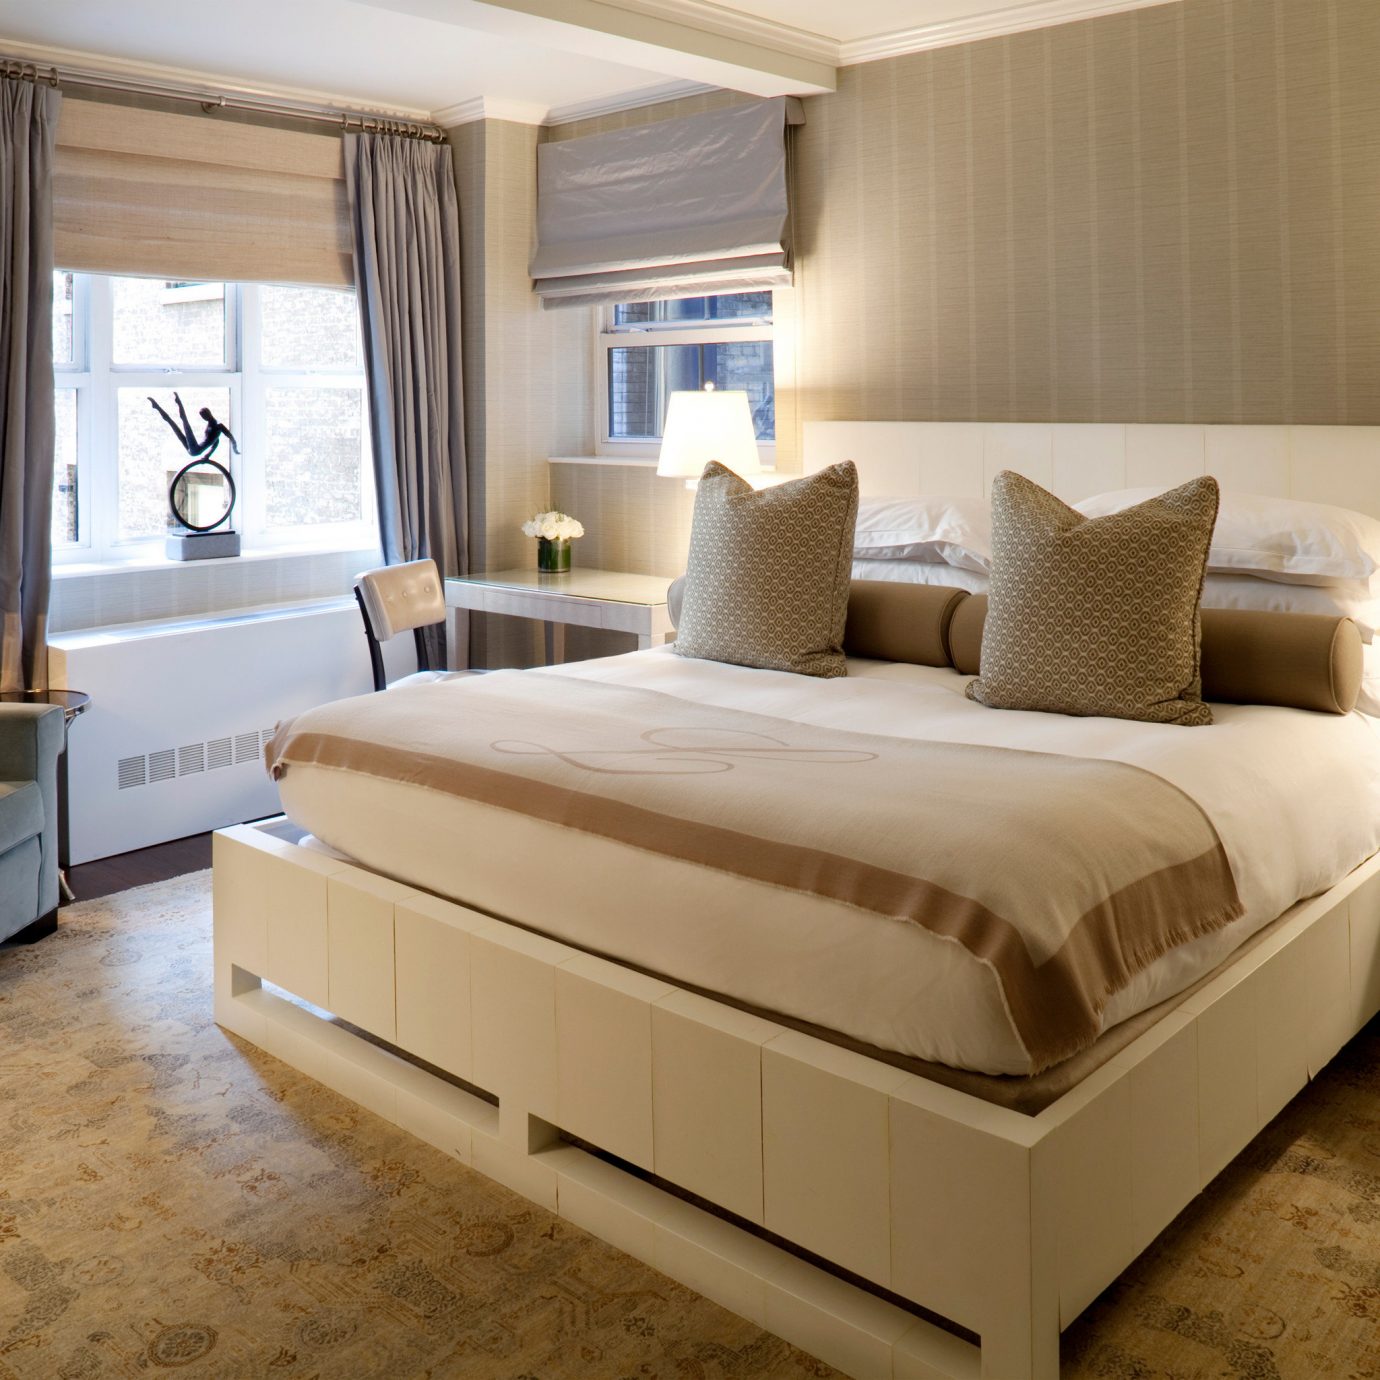 Bedroom Elegant Modern sofa property yacht Suite vehicle living room passenger ship bed frame home bed sheet Boat tan